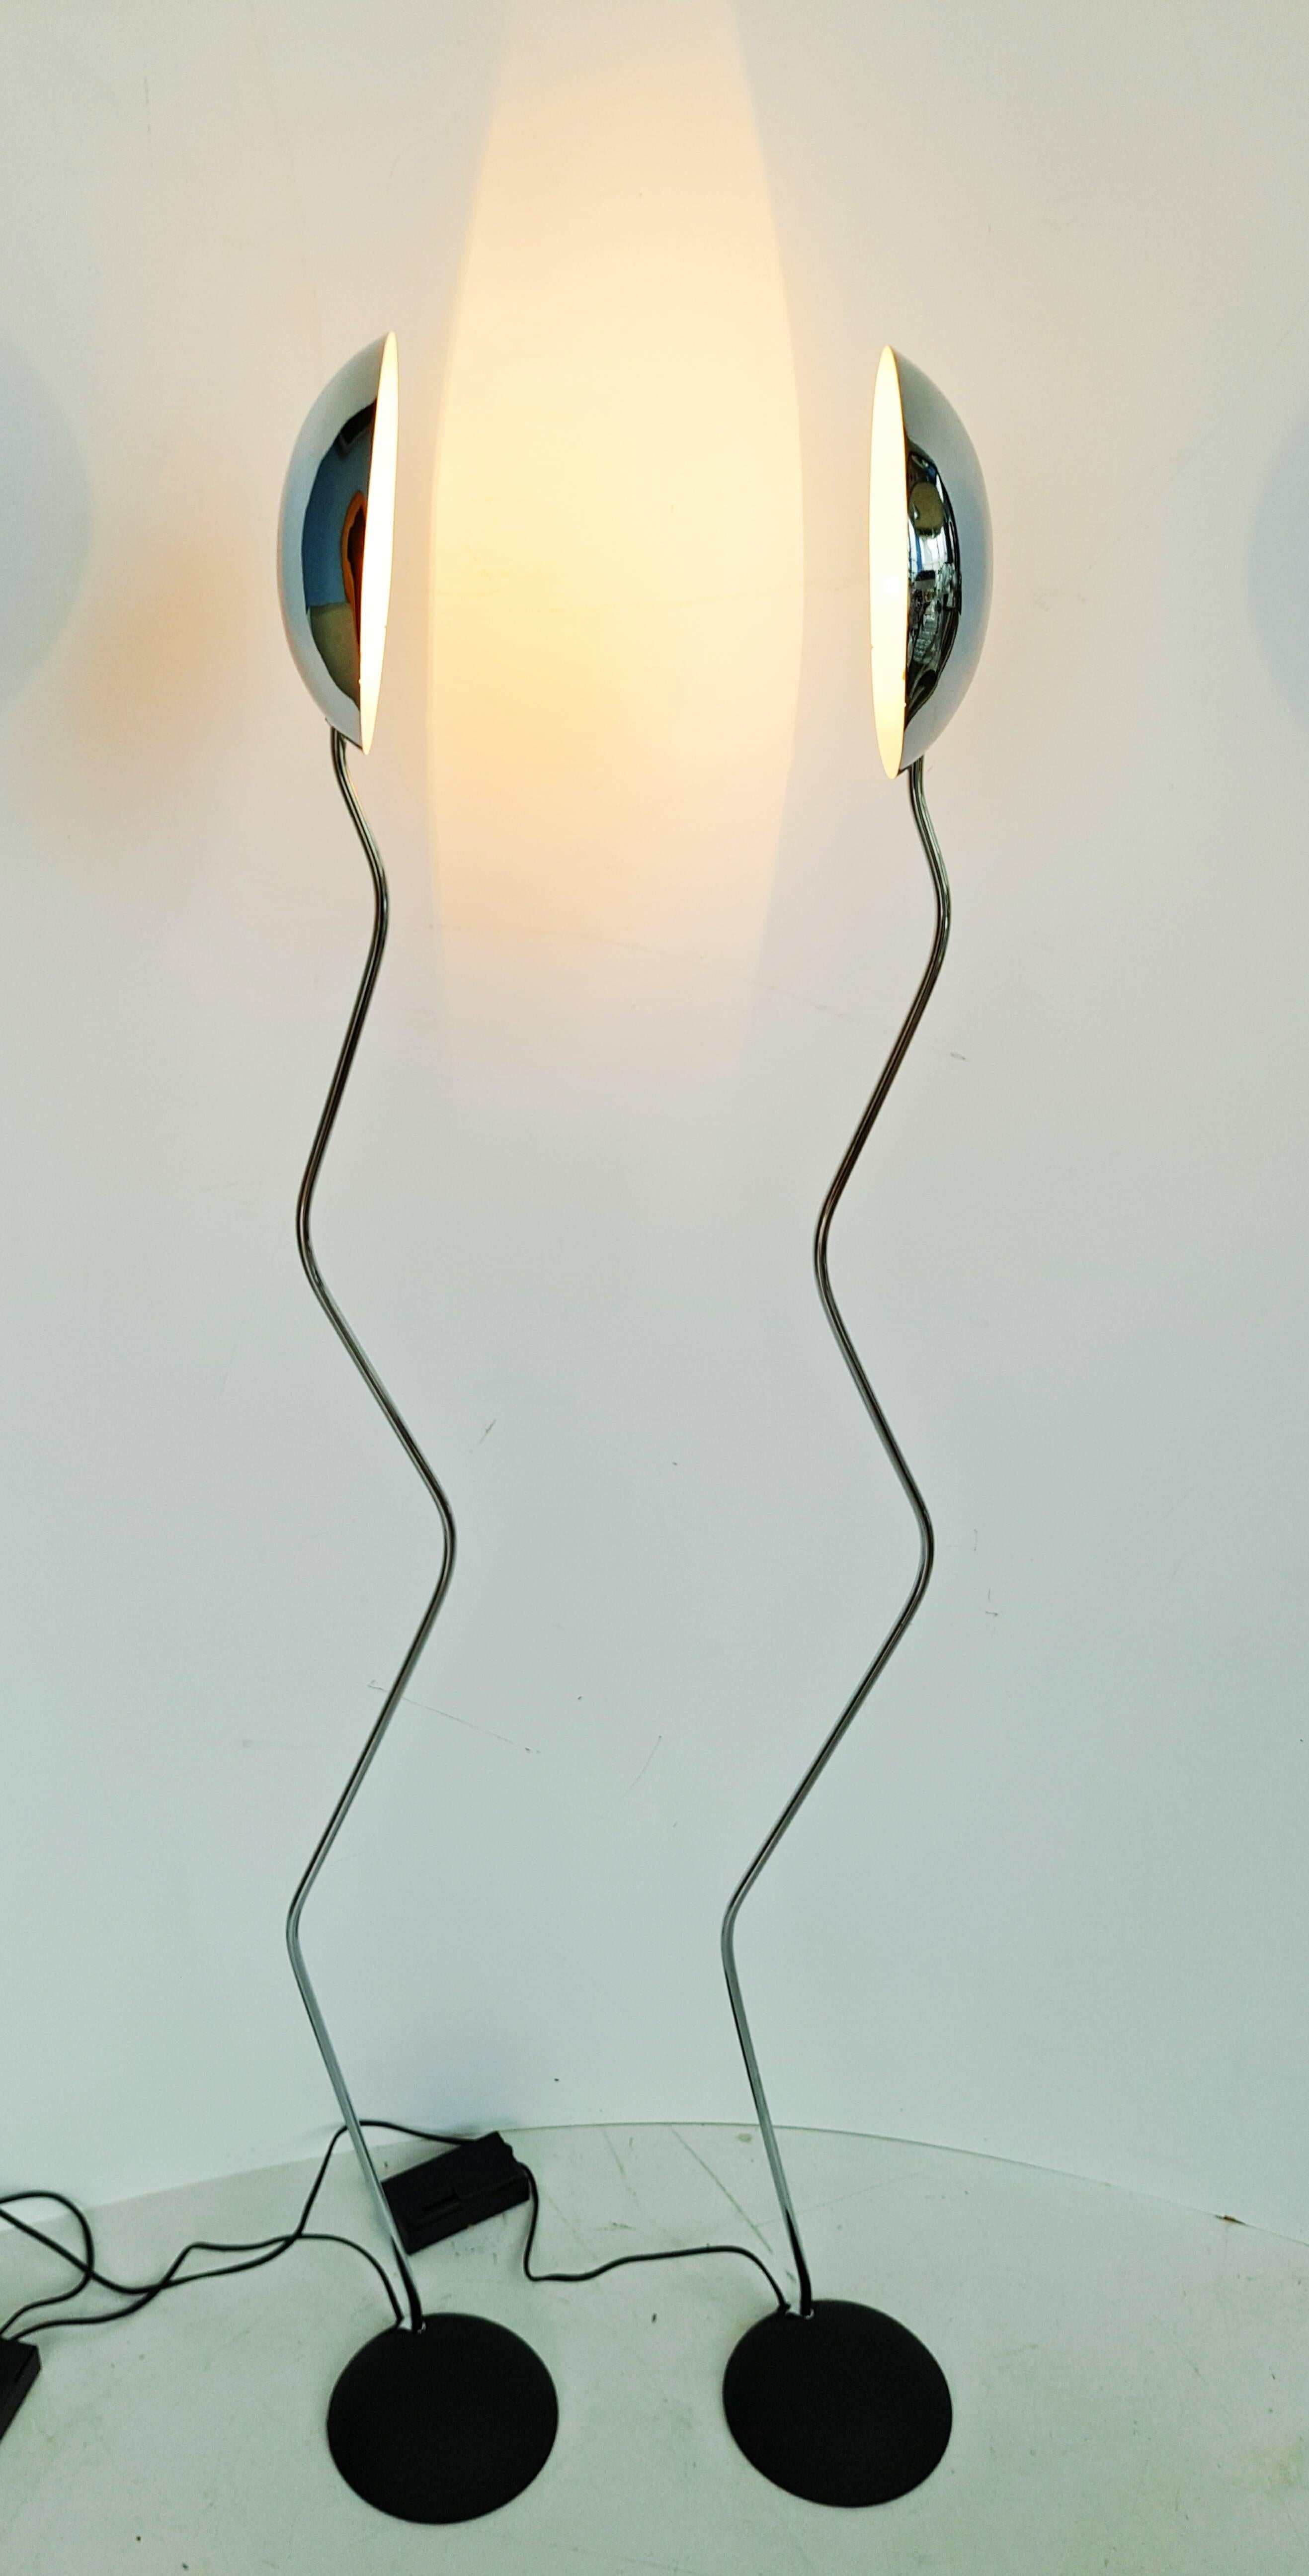 Magnifique paire de lampadaires italiens des années 1970, chromés et à base métallique articulée. Équipé d'un variateur de lumière. Ampoules = b15.